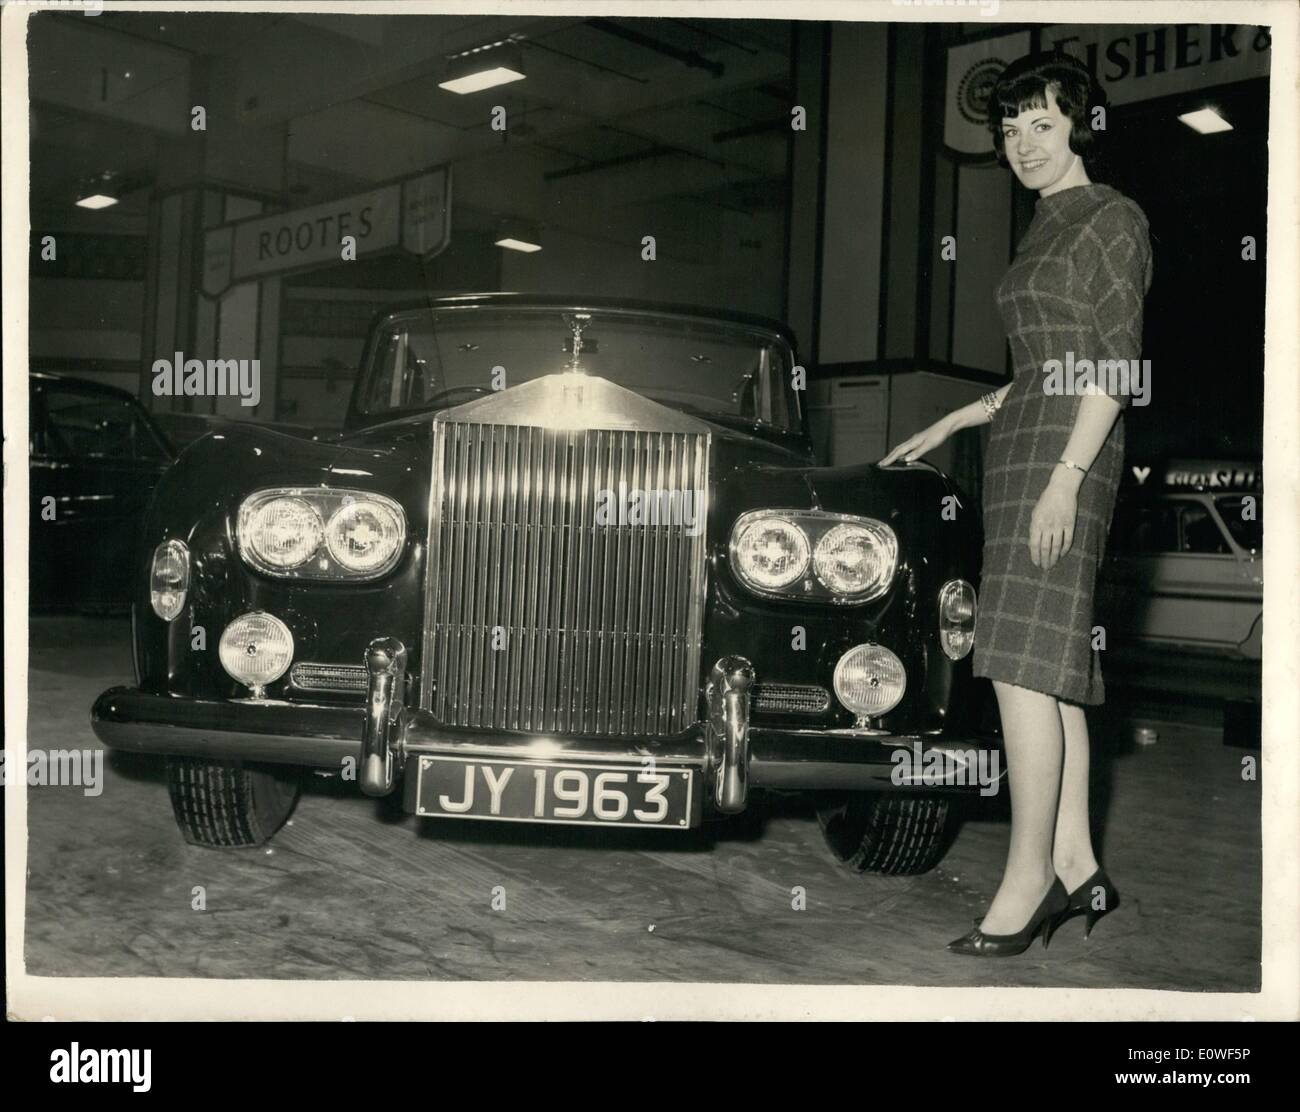 10 octobre 1962 - Nouvelle Rolls Royce dans les salons automobiles : La Rolls Royce Silver Cloud III sera présentée à l'assemblée annuelle de l'ouverture du salon à Earls Court, Londres demain. Au prix de 11 000, c'est la première Rolls Royce à intégrer double-phares. Sont équipés d'un réfrigérateur et télévision. Photo montre : La nouvelle Rolls Royce Silver Cloud III en photo aujourd'hui. Banque D'Images